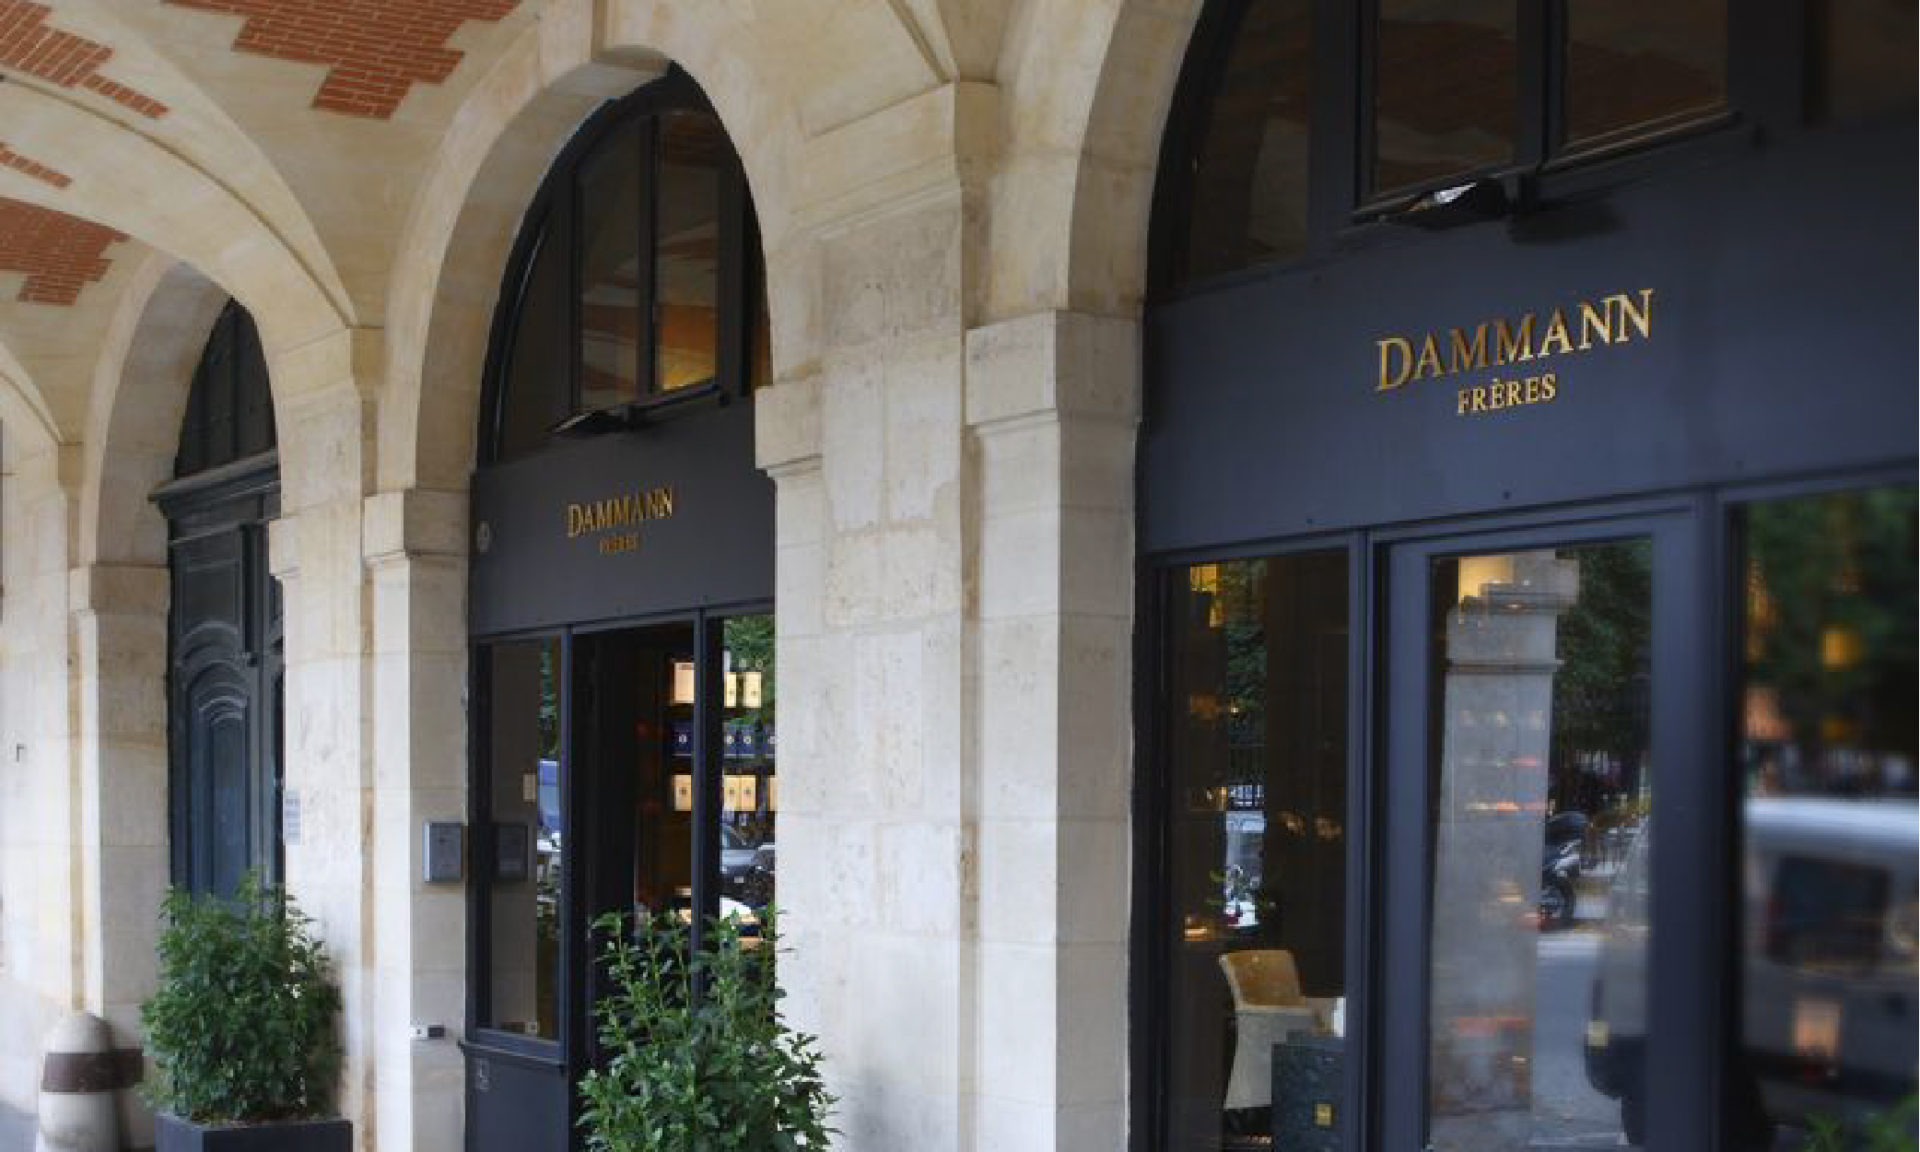 Visit Marais - Dammann store Françoise H